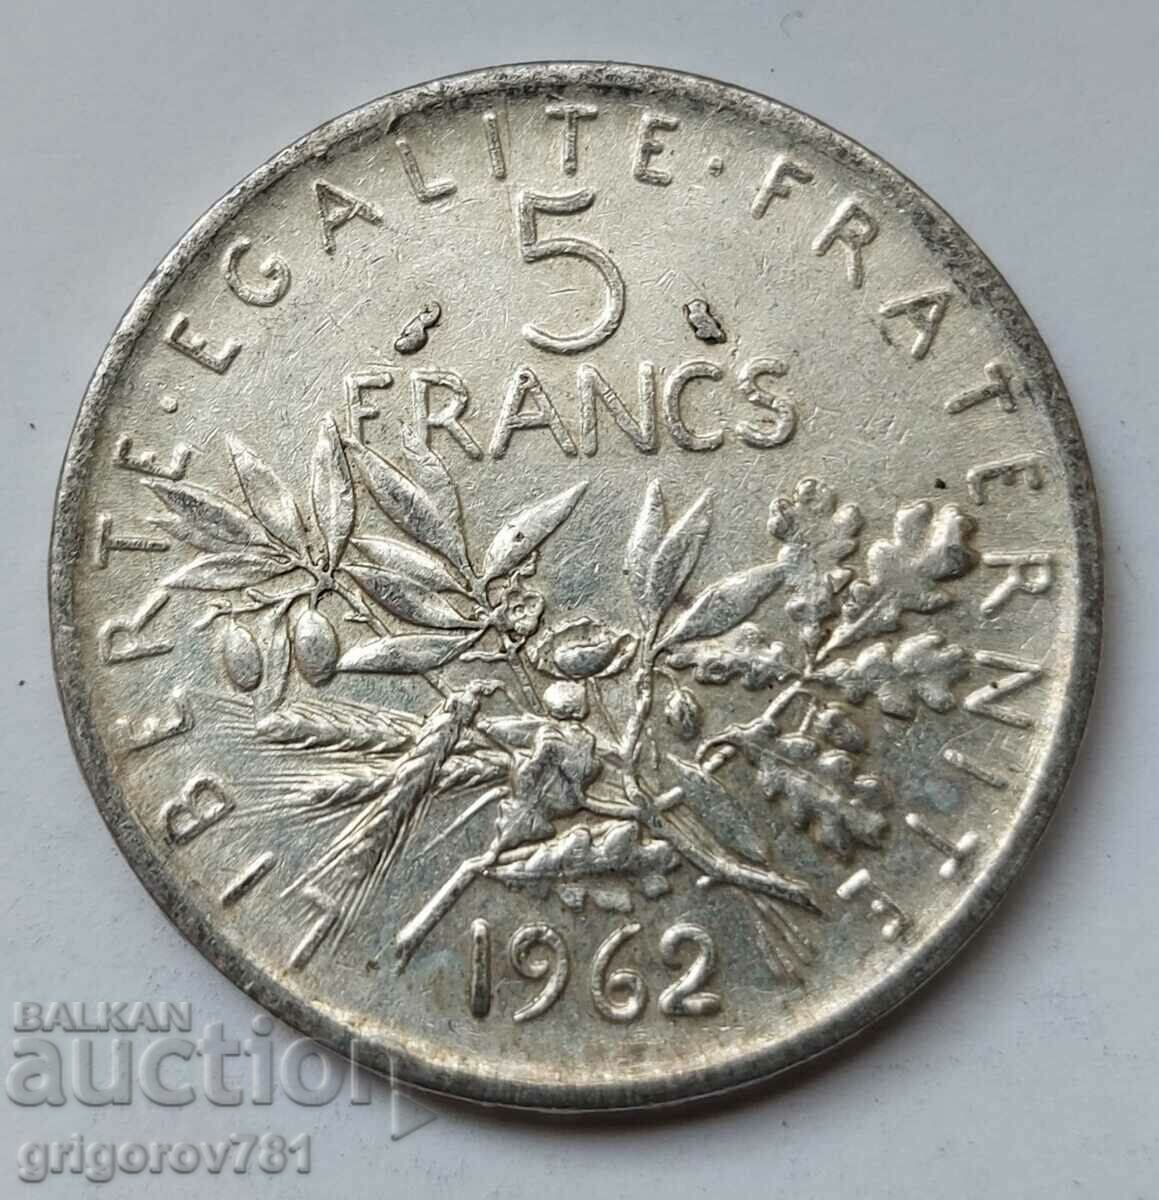 5 Φράγκα Ασήμι Γαλλία 1962 - Ασημένιο νόμισμα #15